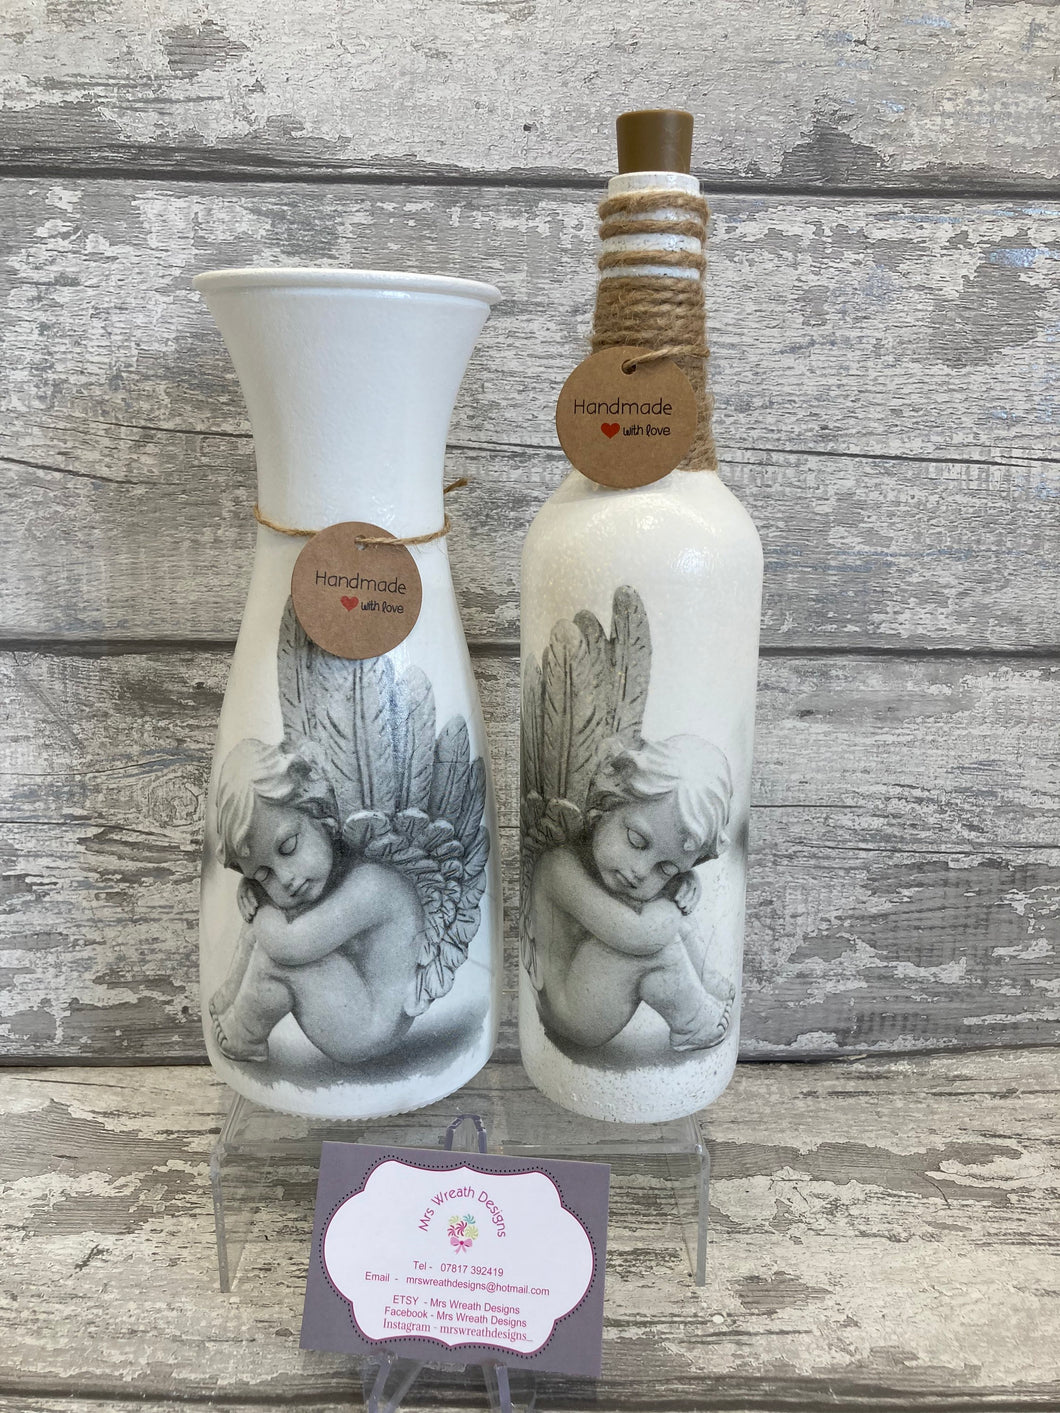 Angel vase & light up bottle set